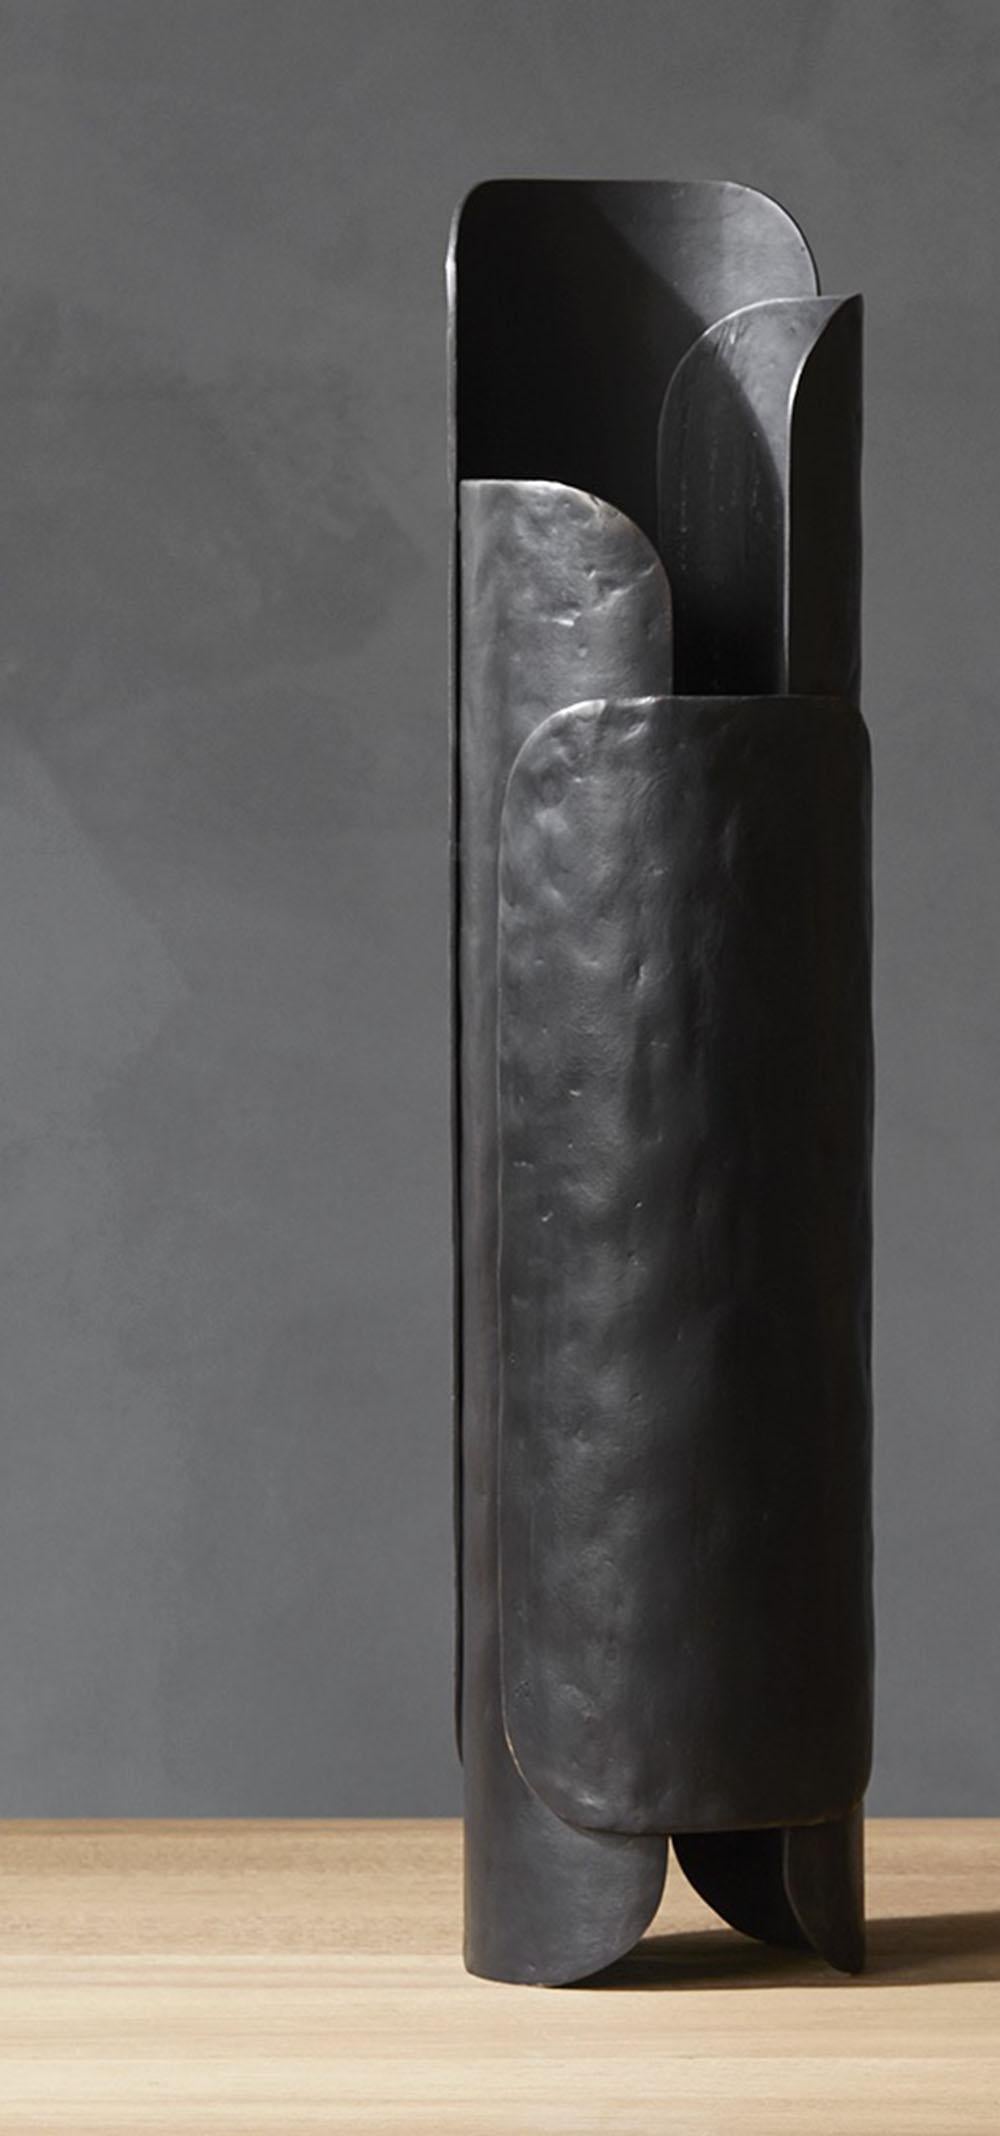 Leaf wurde von Dan Yeffet für Collection Particulière entworfen und ist eine elegante Vase aus schwarz patinierter Bronze mit einem Einsatz aus rostfreiem Stahl.
Abmessungen: Vase (hoch) : Ø 20 x H 77 cm (Einsatz : Ø 16 x H 36 cm)
Materialien: